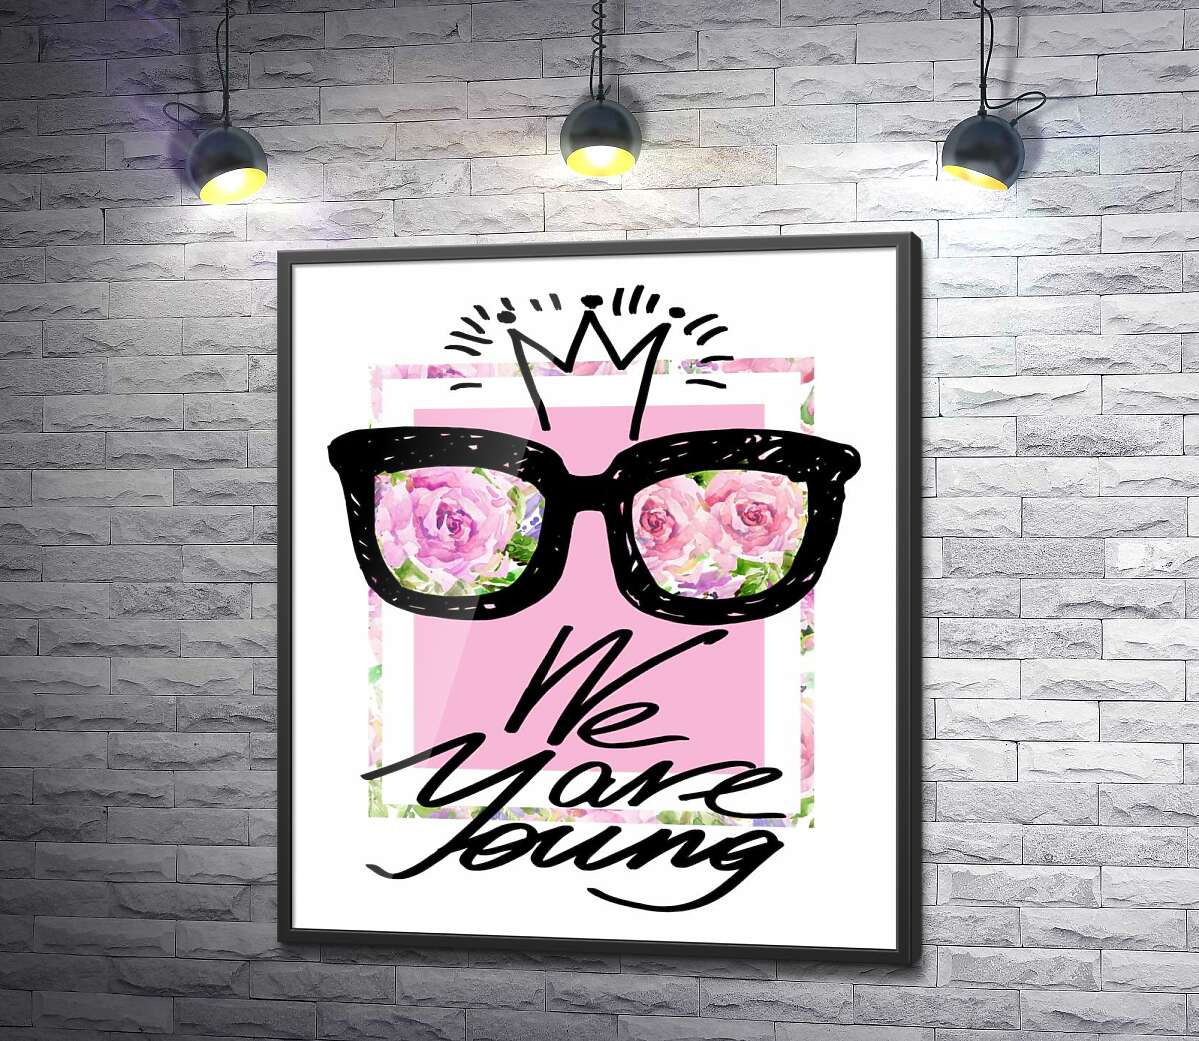 постер Чорні окуляри з короною над написом "we are young"